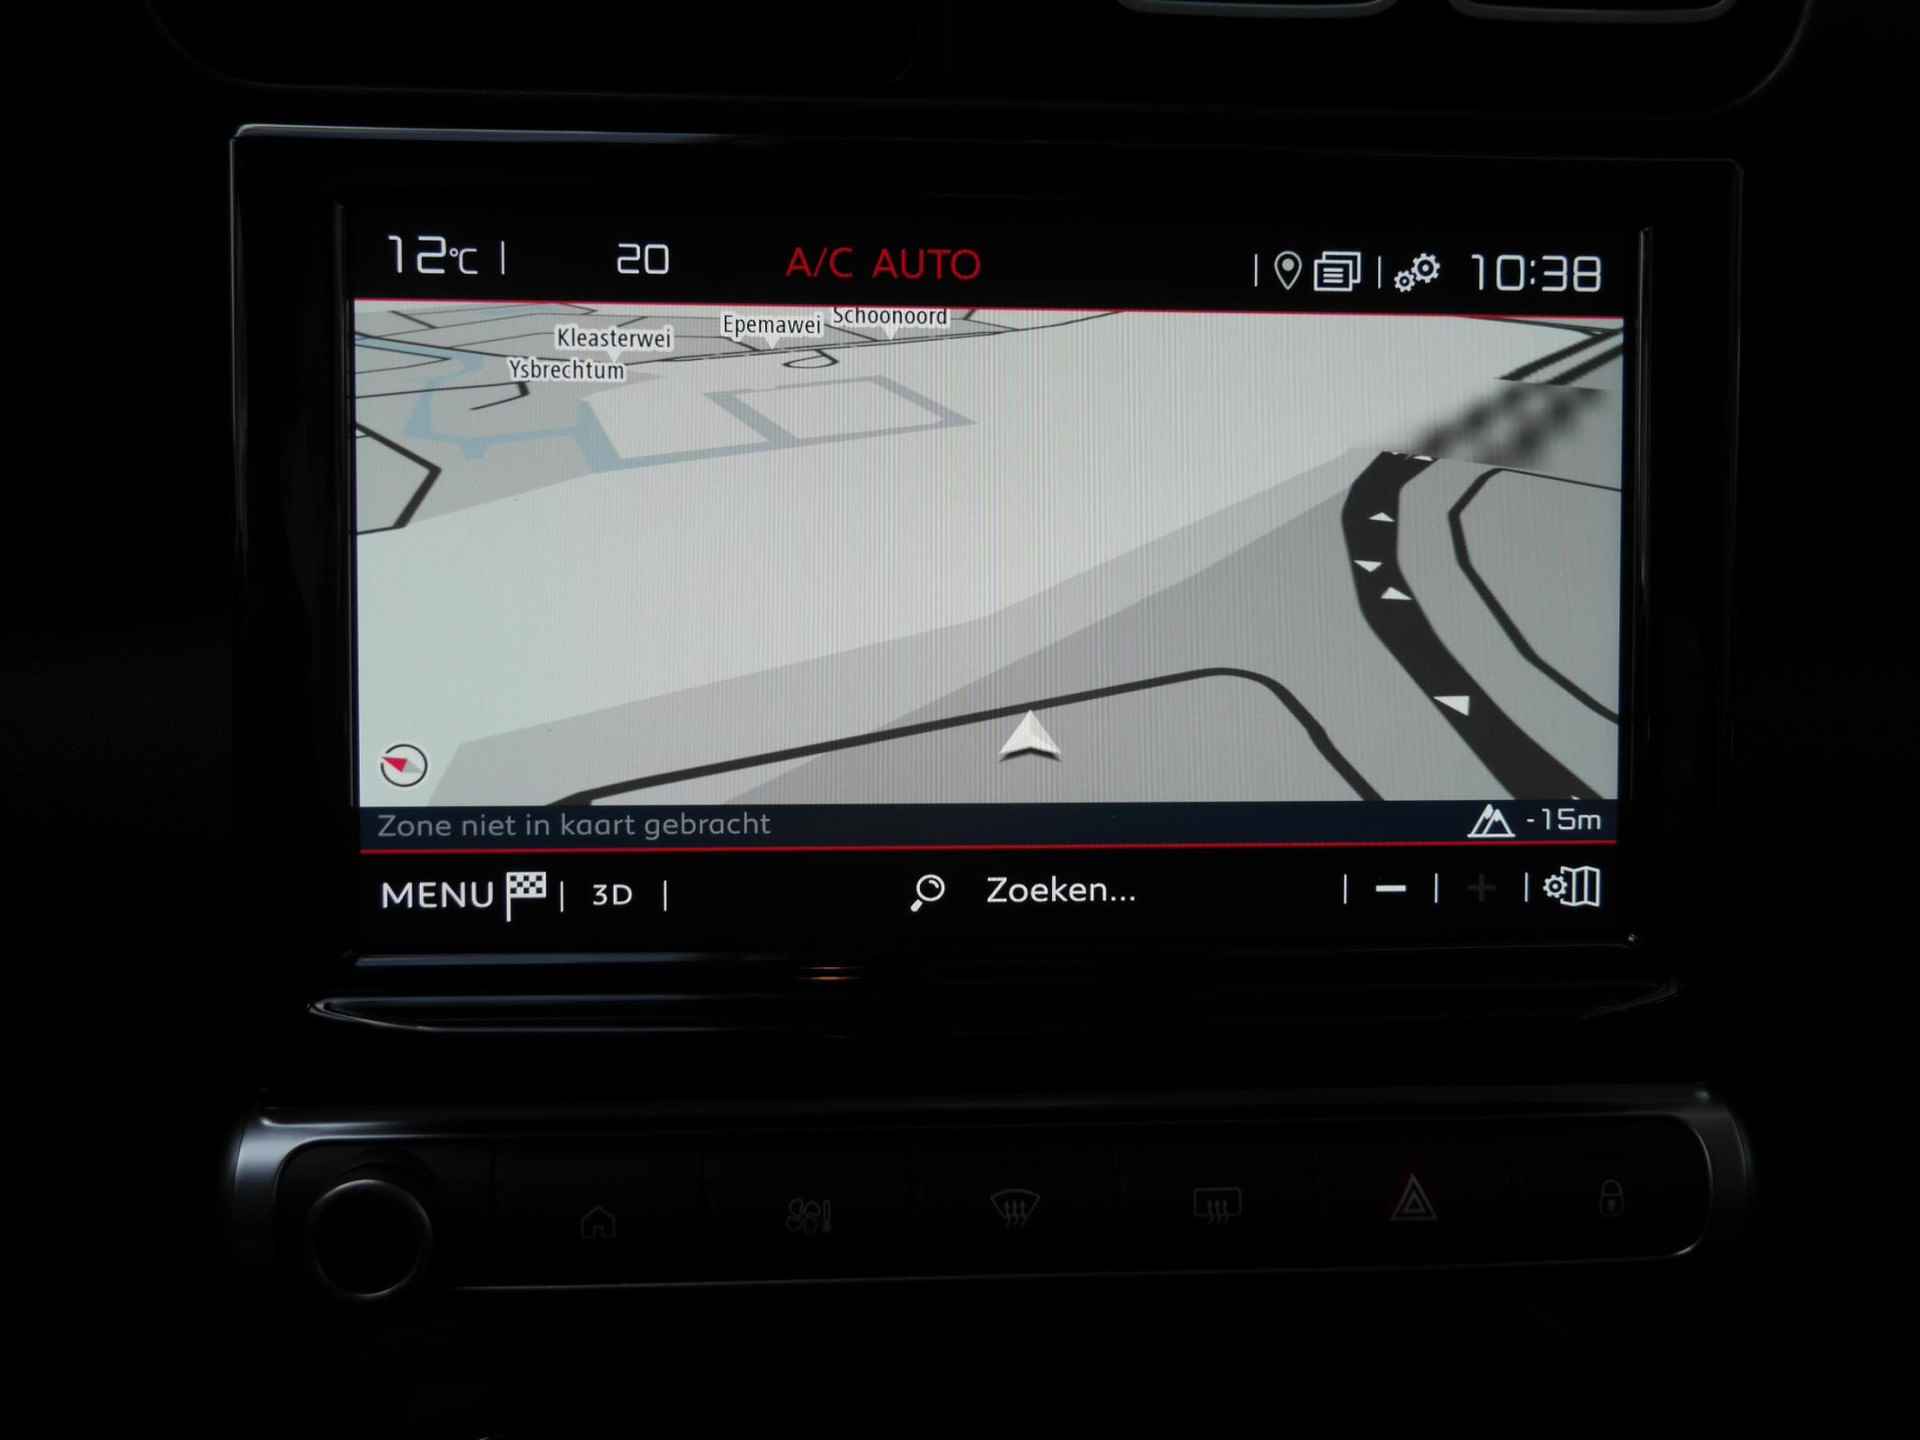 Citroen C3 Aircross 1.2 PureTech Plus | Nieuwe auto | Navigatie | Head up display | | Led | Lichtmetalen velgen | Parkeersensoren | Keyless entry en start | Android auto en Apple carplay - 25/44